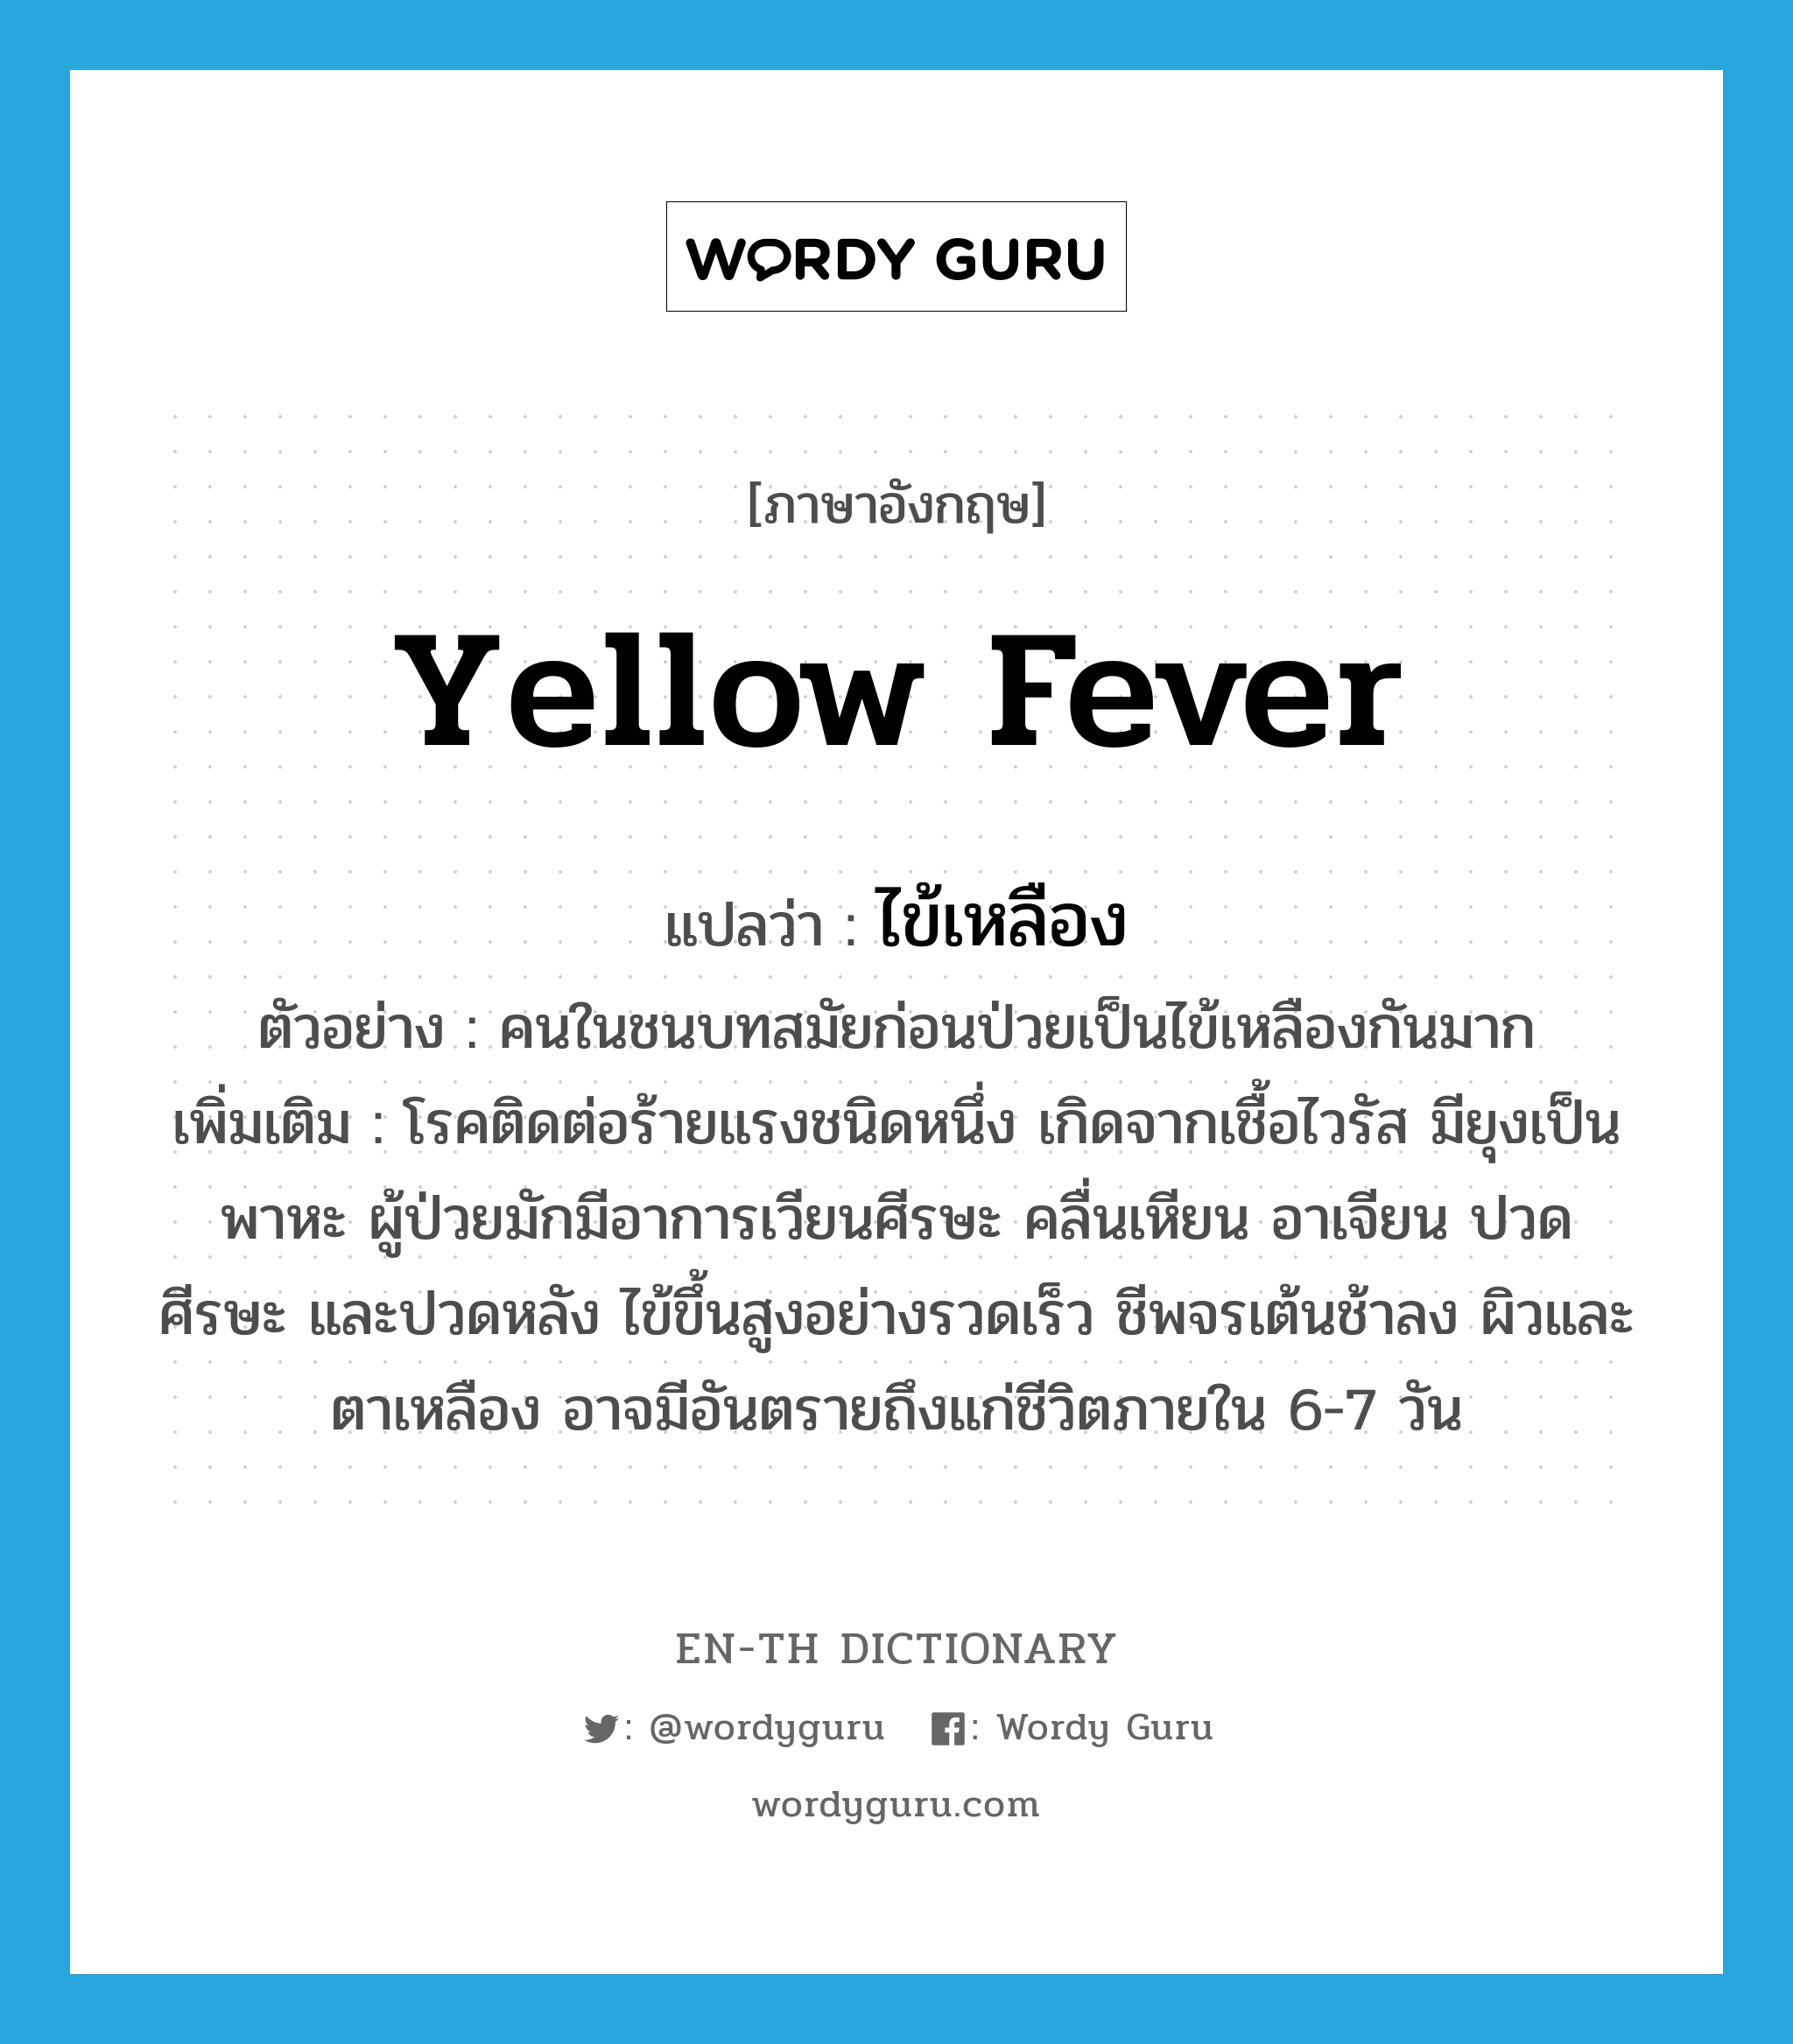 yellow fever แปลว่า?, คำศัพท์ภาษาอังกฤษ yellow fever แปลว่า ไข้เหลือง ประเภท N ตัวอย่าง คนในชนบทสมัยก่อนป่วยเป็นไข้เหลืองกันมาก เพิ่มเติม โรคติดต่อร้ายแรงชนิดหนึ่ง เกิดจากเชื้อไวรัส มียุงเป็นพาหะ ผู้ป่วยมักมีอาการเวียนศีรษะ คลื่นเหียน อาเจียน ปวดศีรษะ และปวดหลัง ไข้ขึ้นสูงอย่างรวดเร็ว ชีพจรเต้นช้าลง ผิวและตาเหลือง อาจมีอันตรายถึงแก่ชีวิตภายใน 6-7 วัน หมวด N